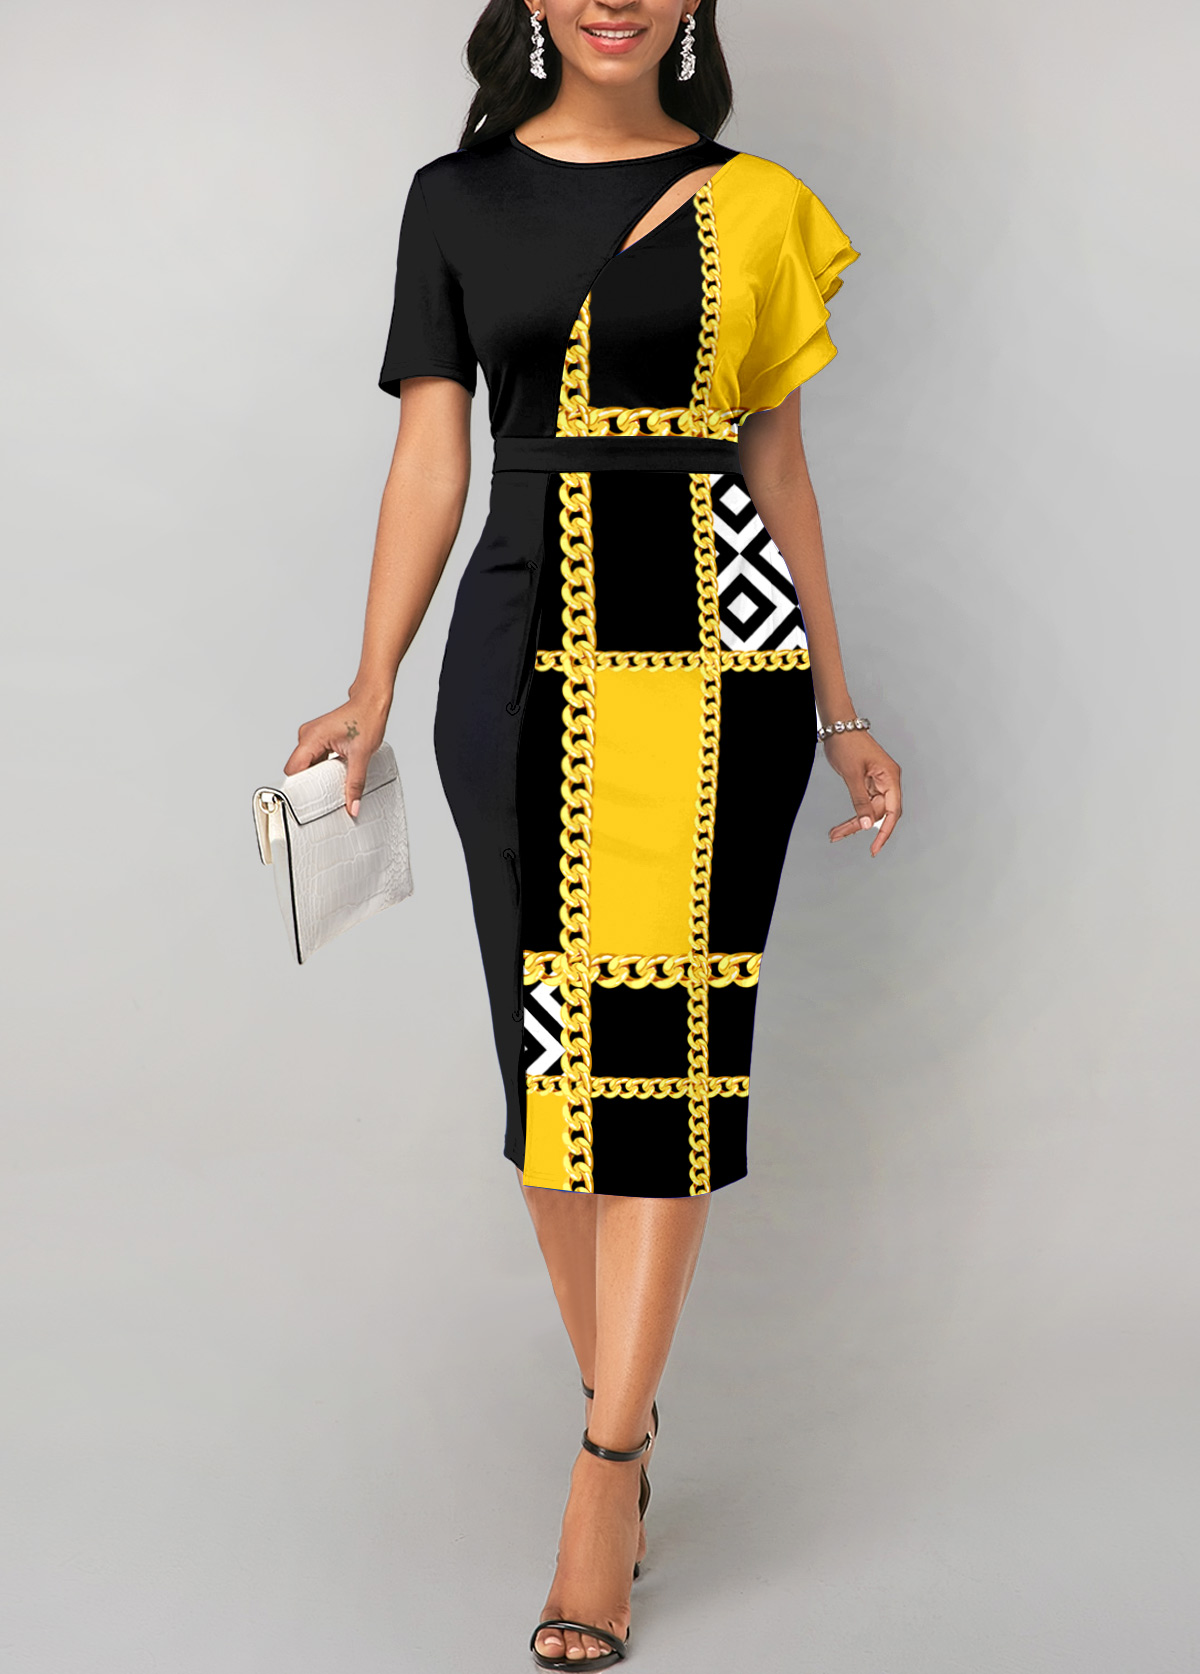 ROTITA Cut Out Geometric Print Yellow Bodycon Dress